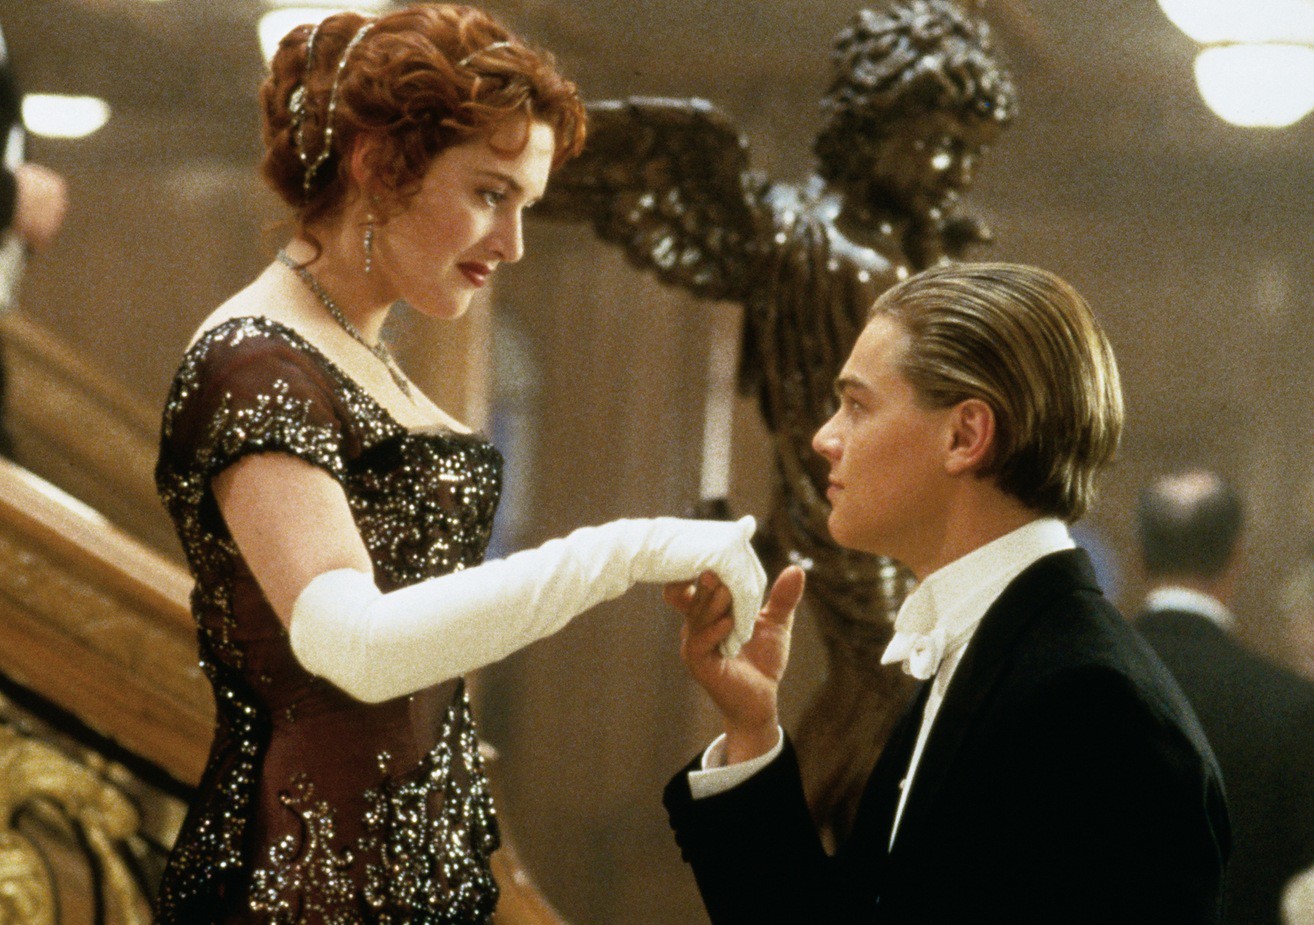 Sao "Titanic" ngày ấy - bây giờ: Leonardo DiCaprio đời tư ồn ào, chỉ yêu bạn gái dưới 25 tuổi - 2